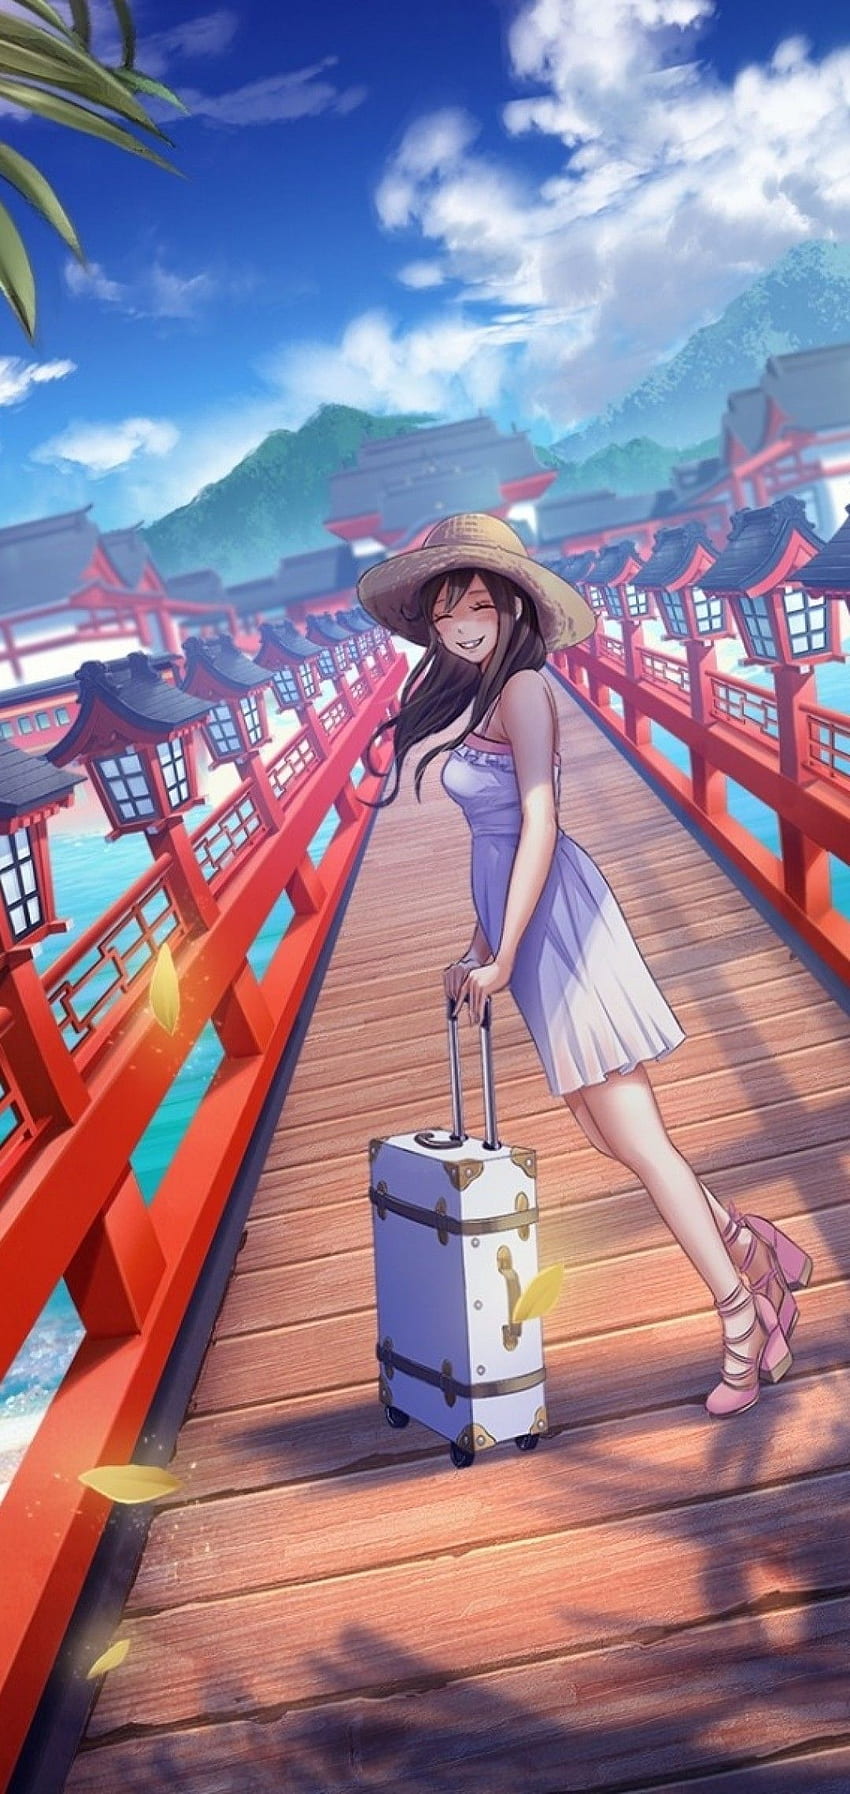 Anime Girl, Bridge, Trip, Holiday, Vacation, Happy Face para Samsung Galaxy S10e, Xiaomi Mi A2 Lite, OnePlus 6 - Maiden fondo de pantalla del teléfono